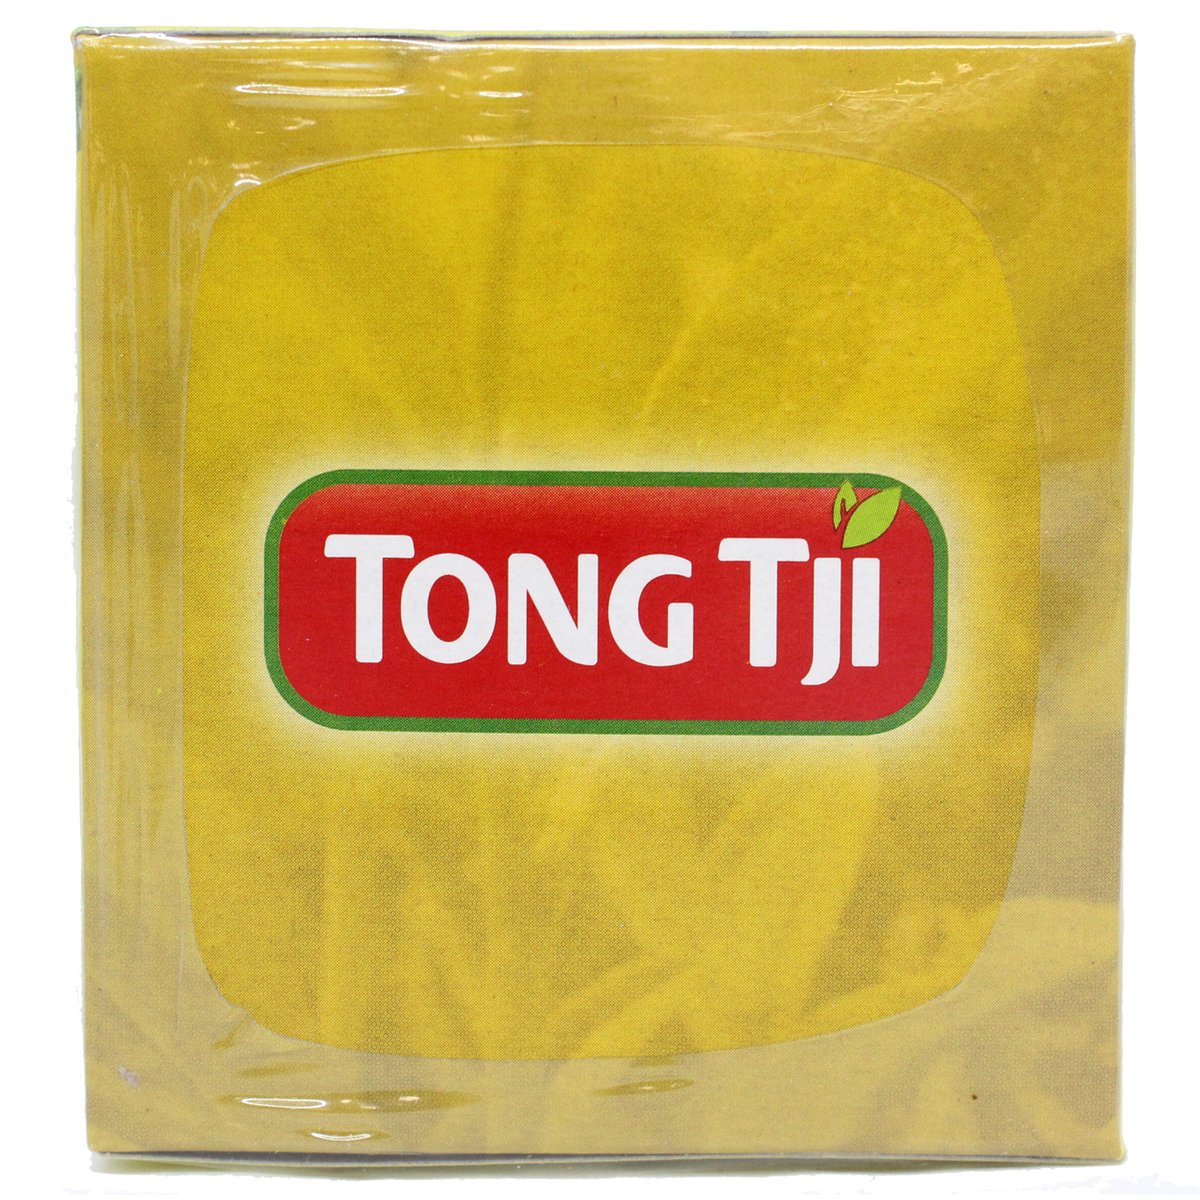 Tong Tji Lemon Tea 15pcs